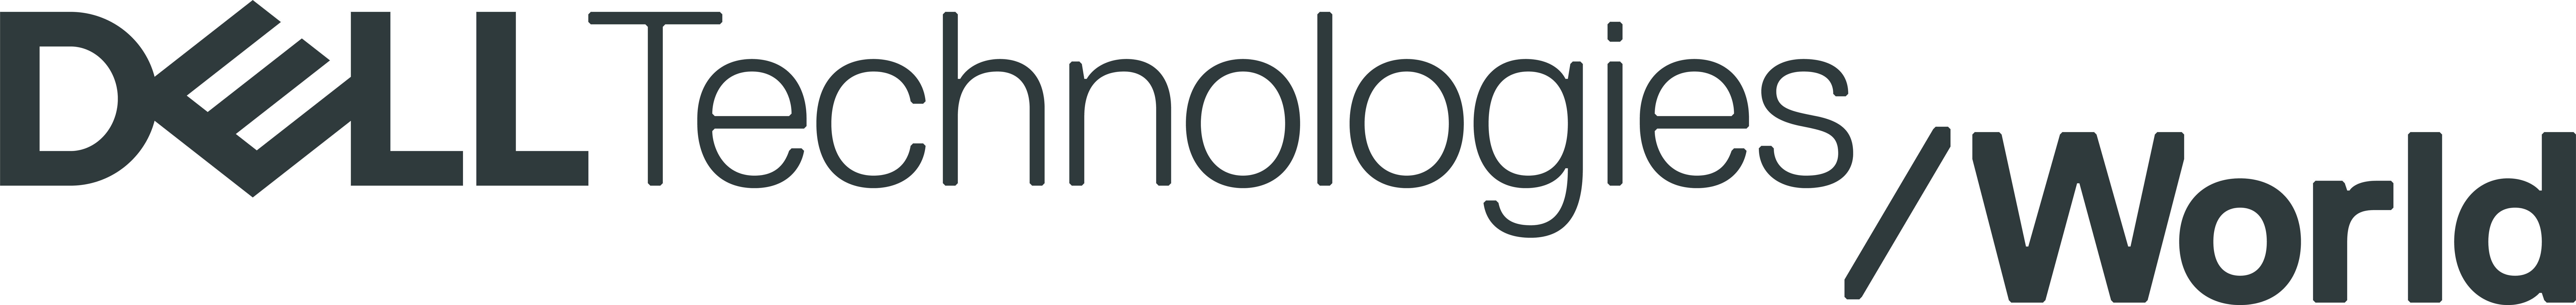 Dell Technologies Logo - Dell Technologies World - Hortonworks